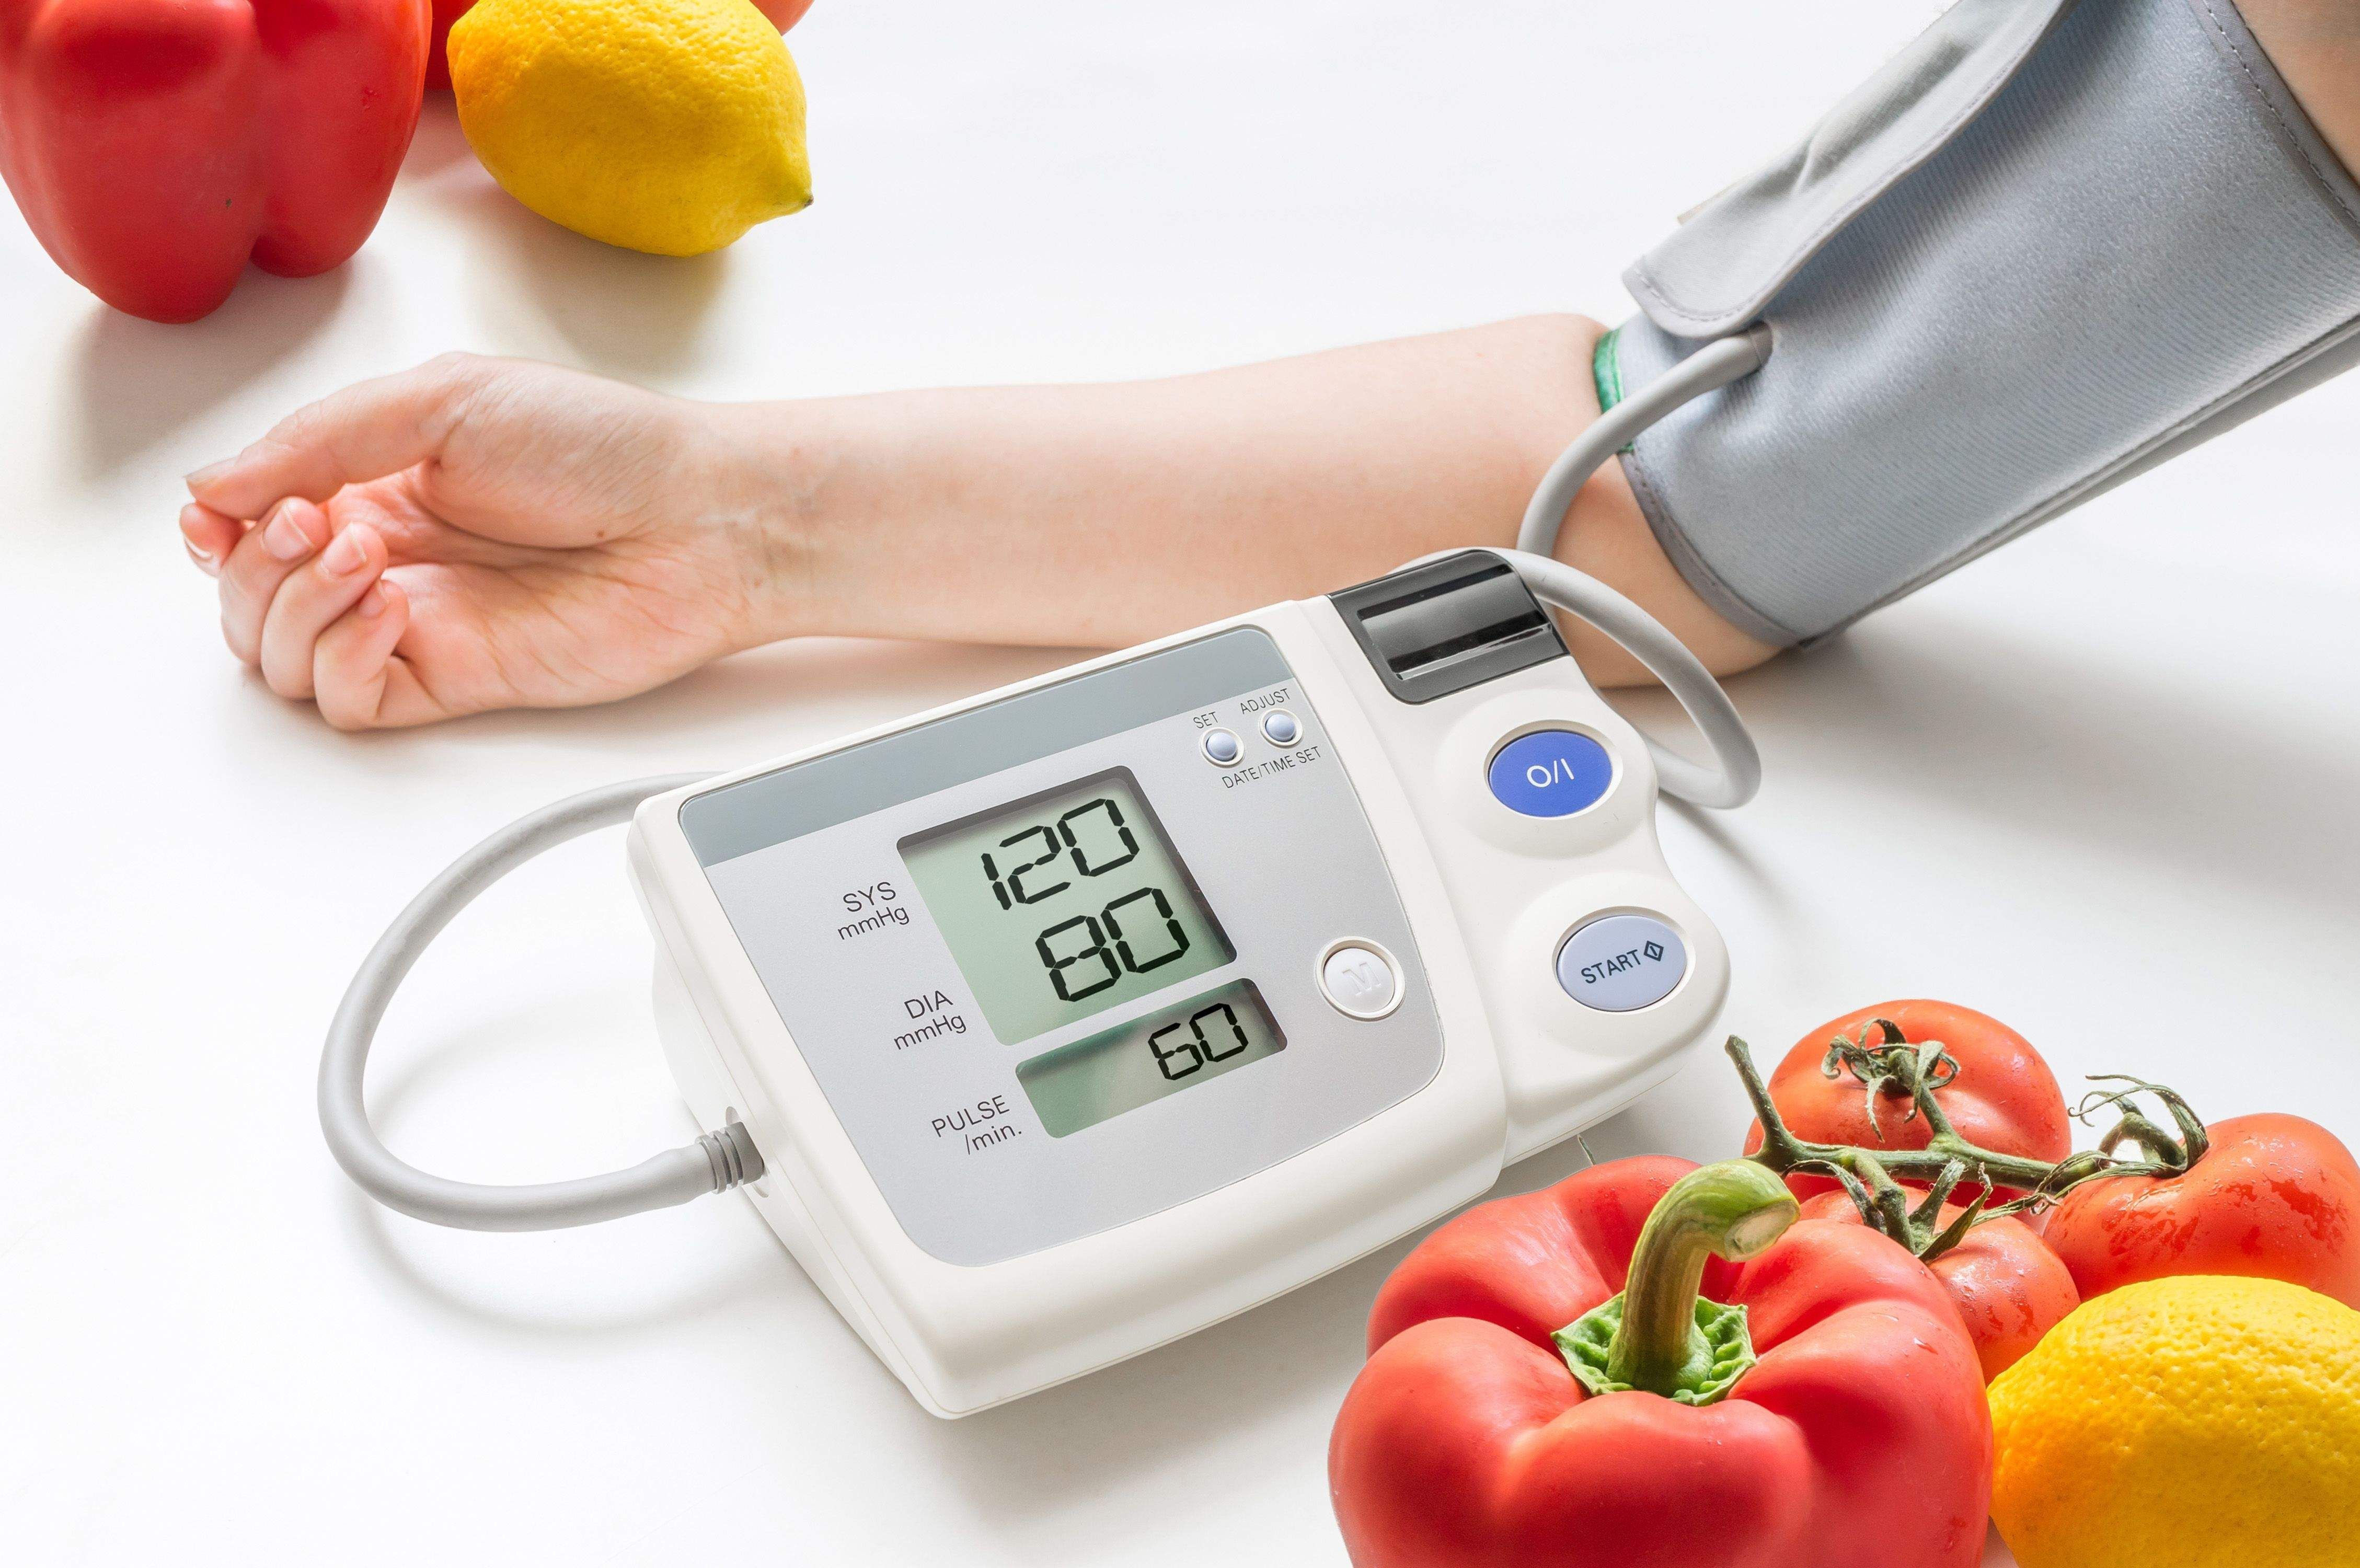 تکنیک های سریع برای کنترل فشار خون بالا در روزهای کرونایی